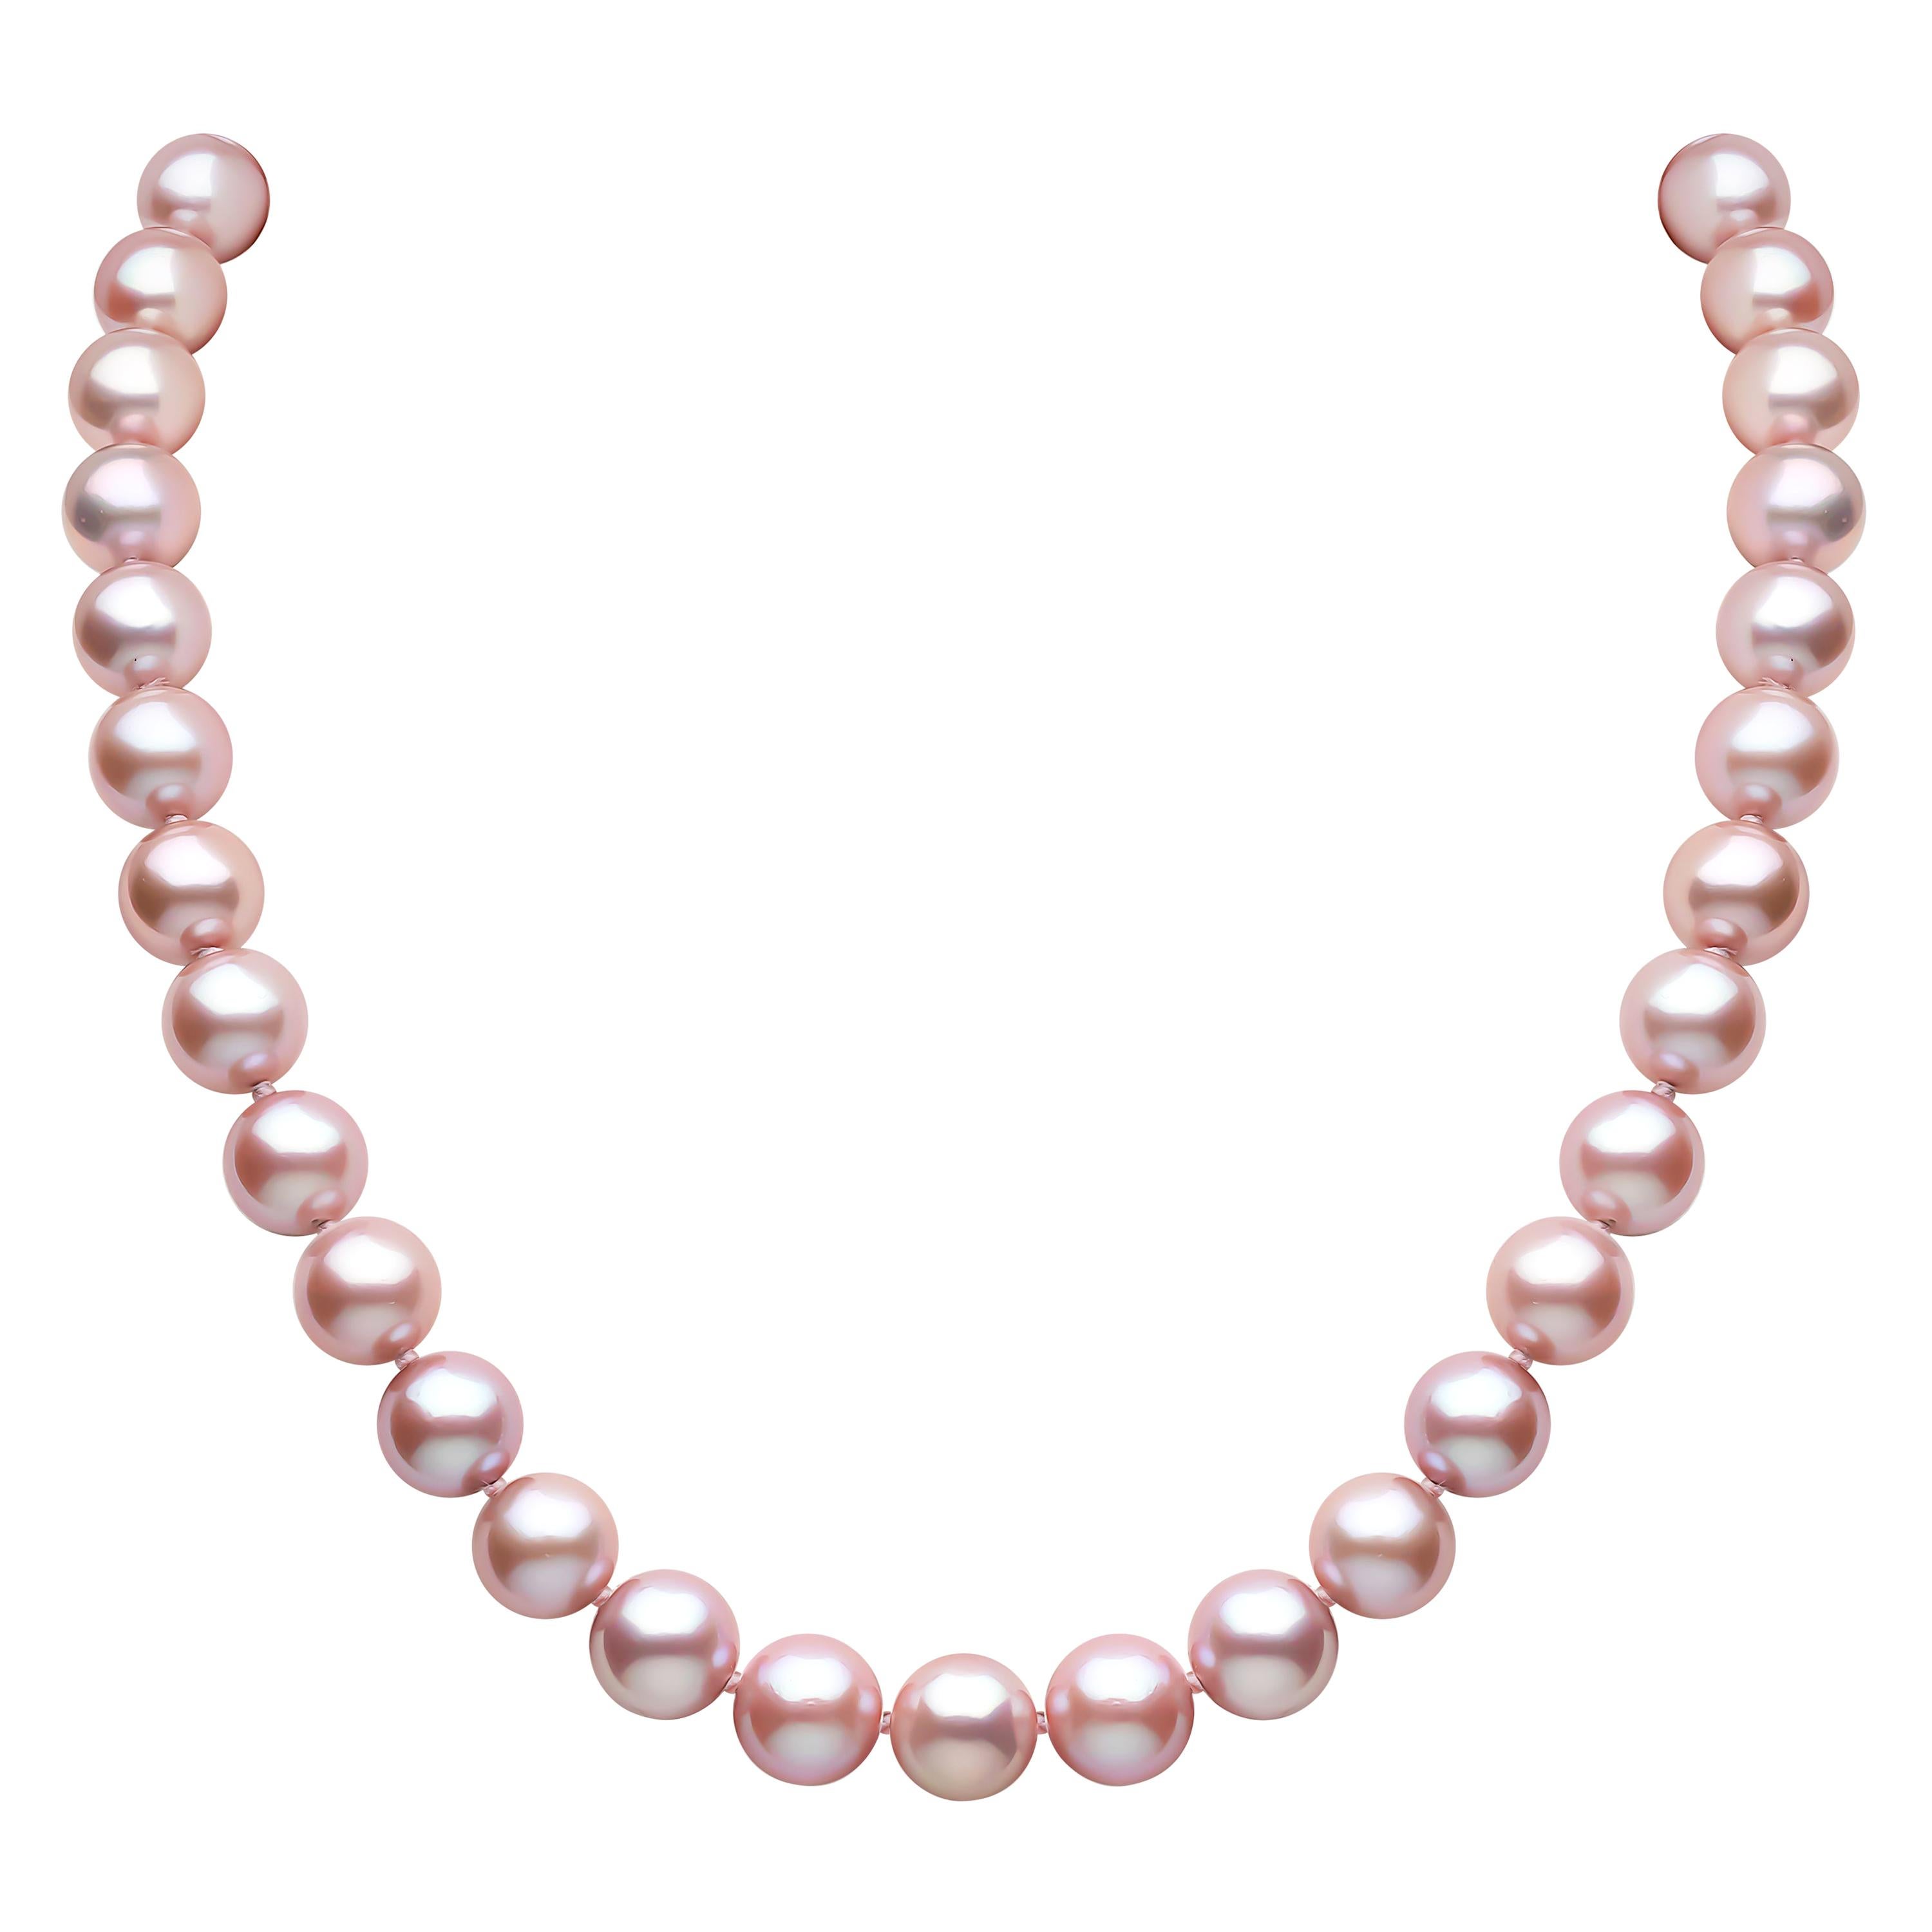 Yoko London Freshwater Pearl Necklace in 18 Karat White Gold